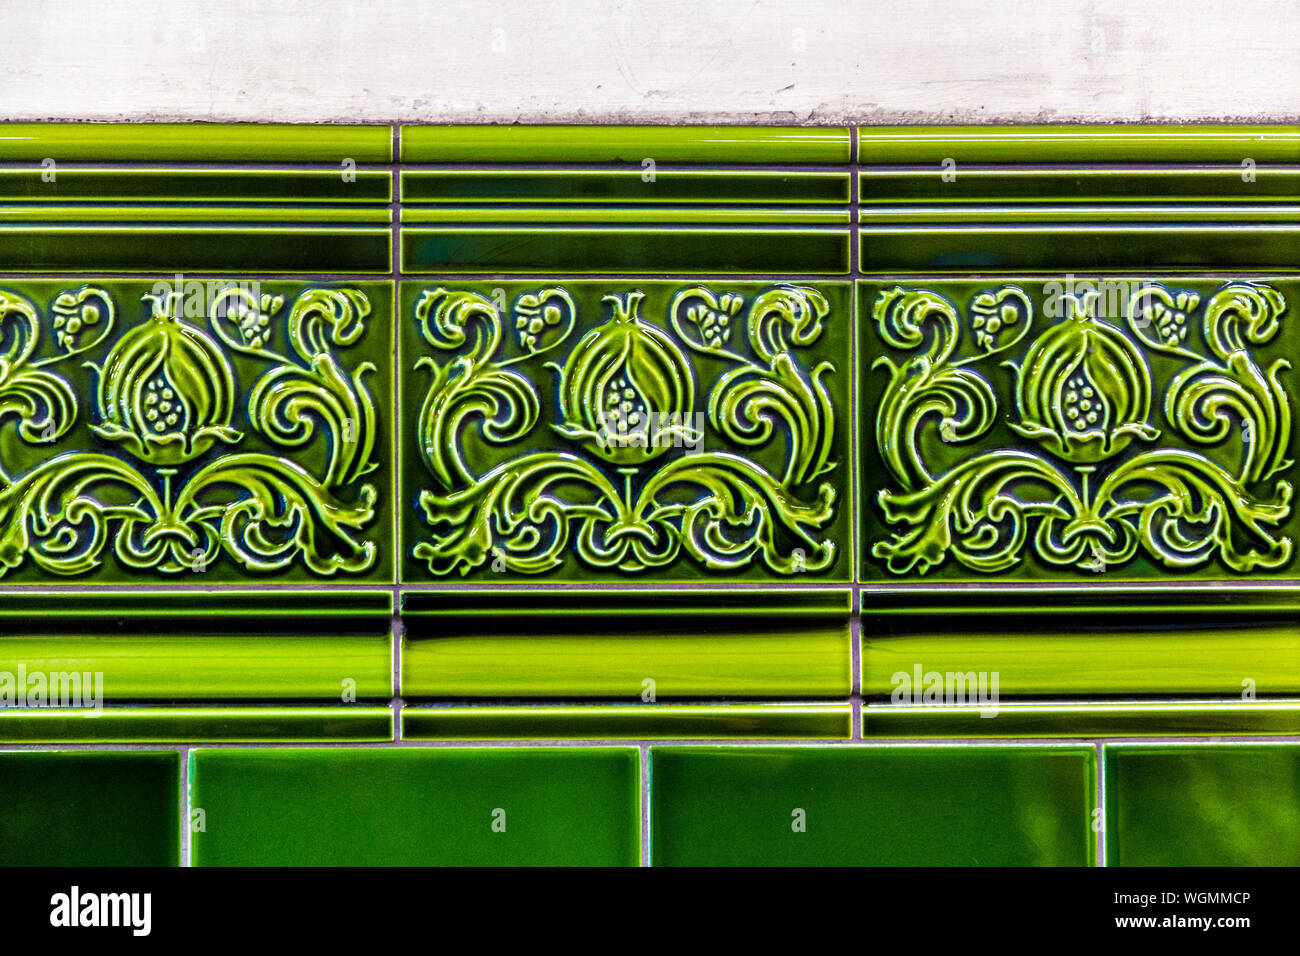 Detalle de azulejos decorativos de cerámica verde con un friso de hojas de acanto en la estación de metro de Chalk Farm, Londres, Reino Unido. Foto de stock